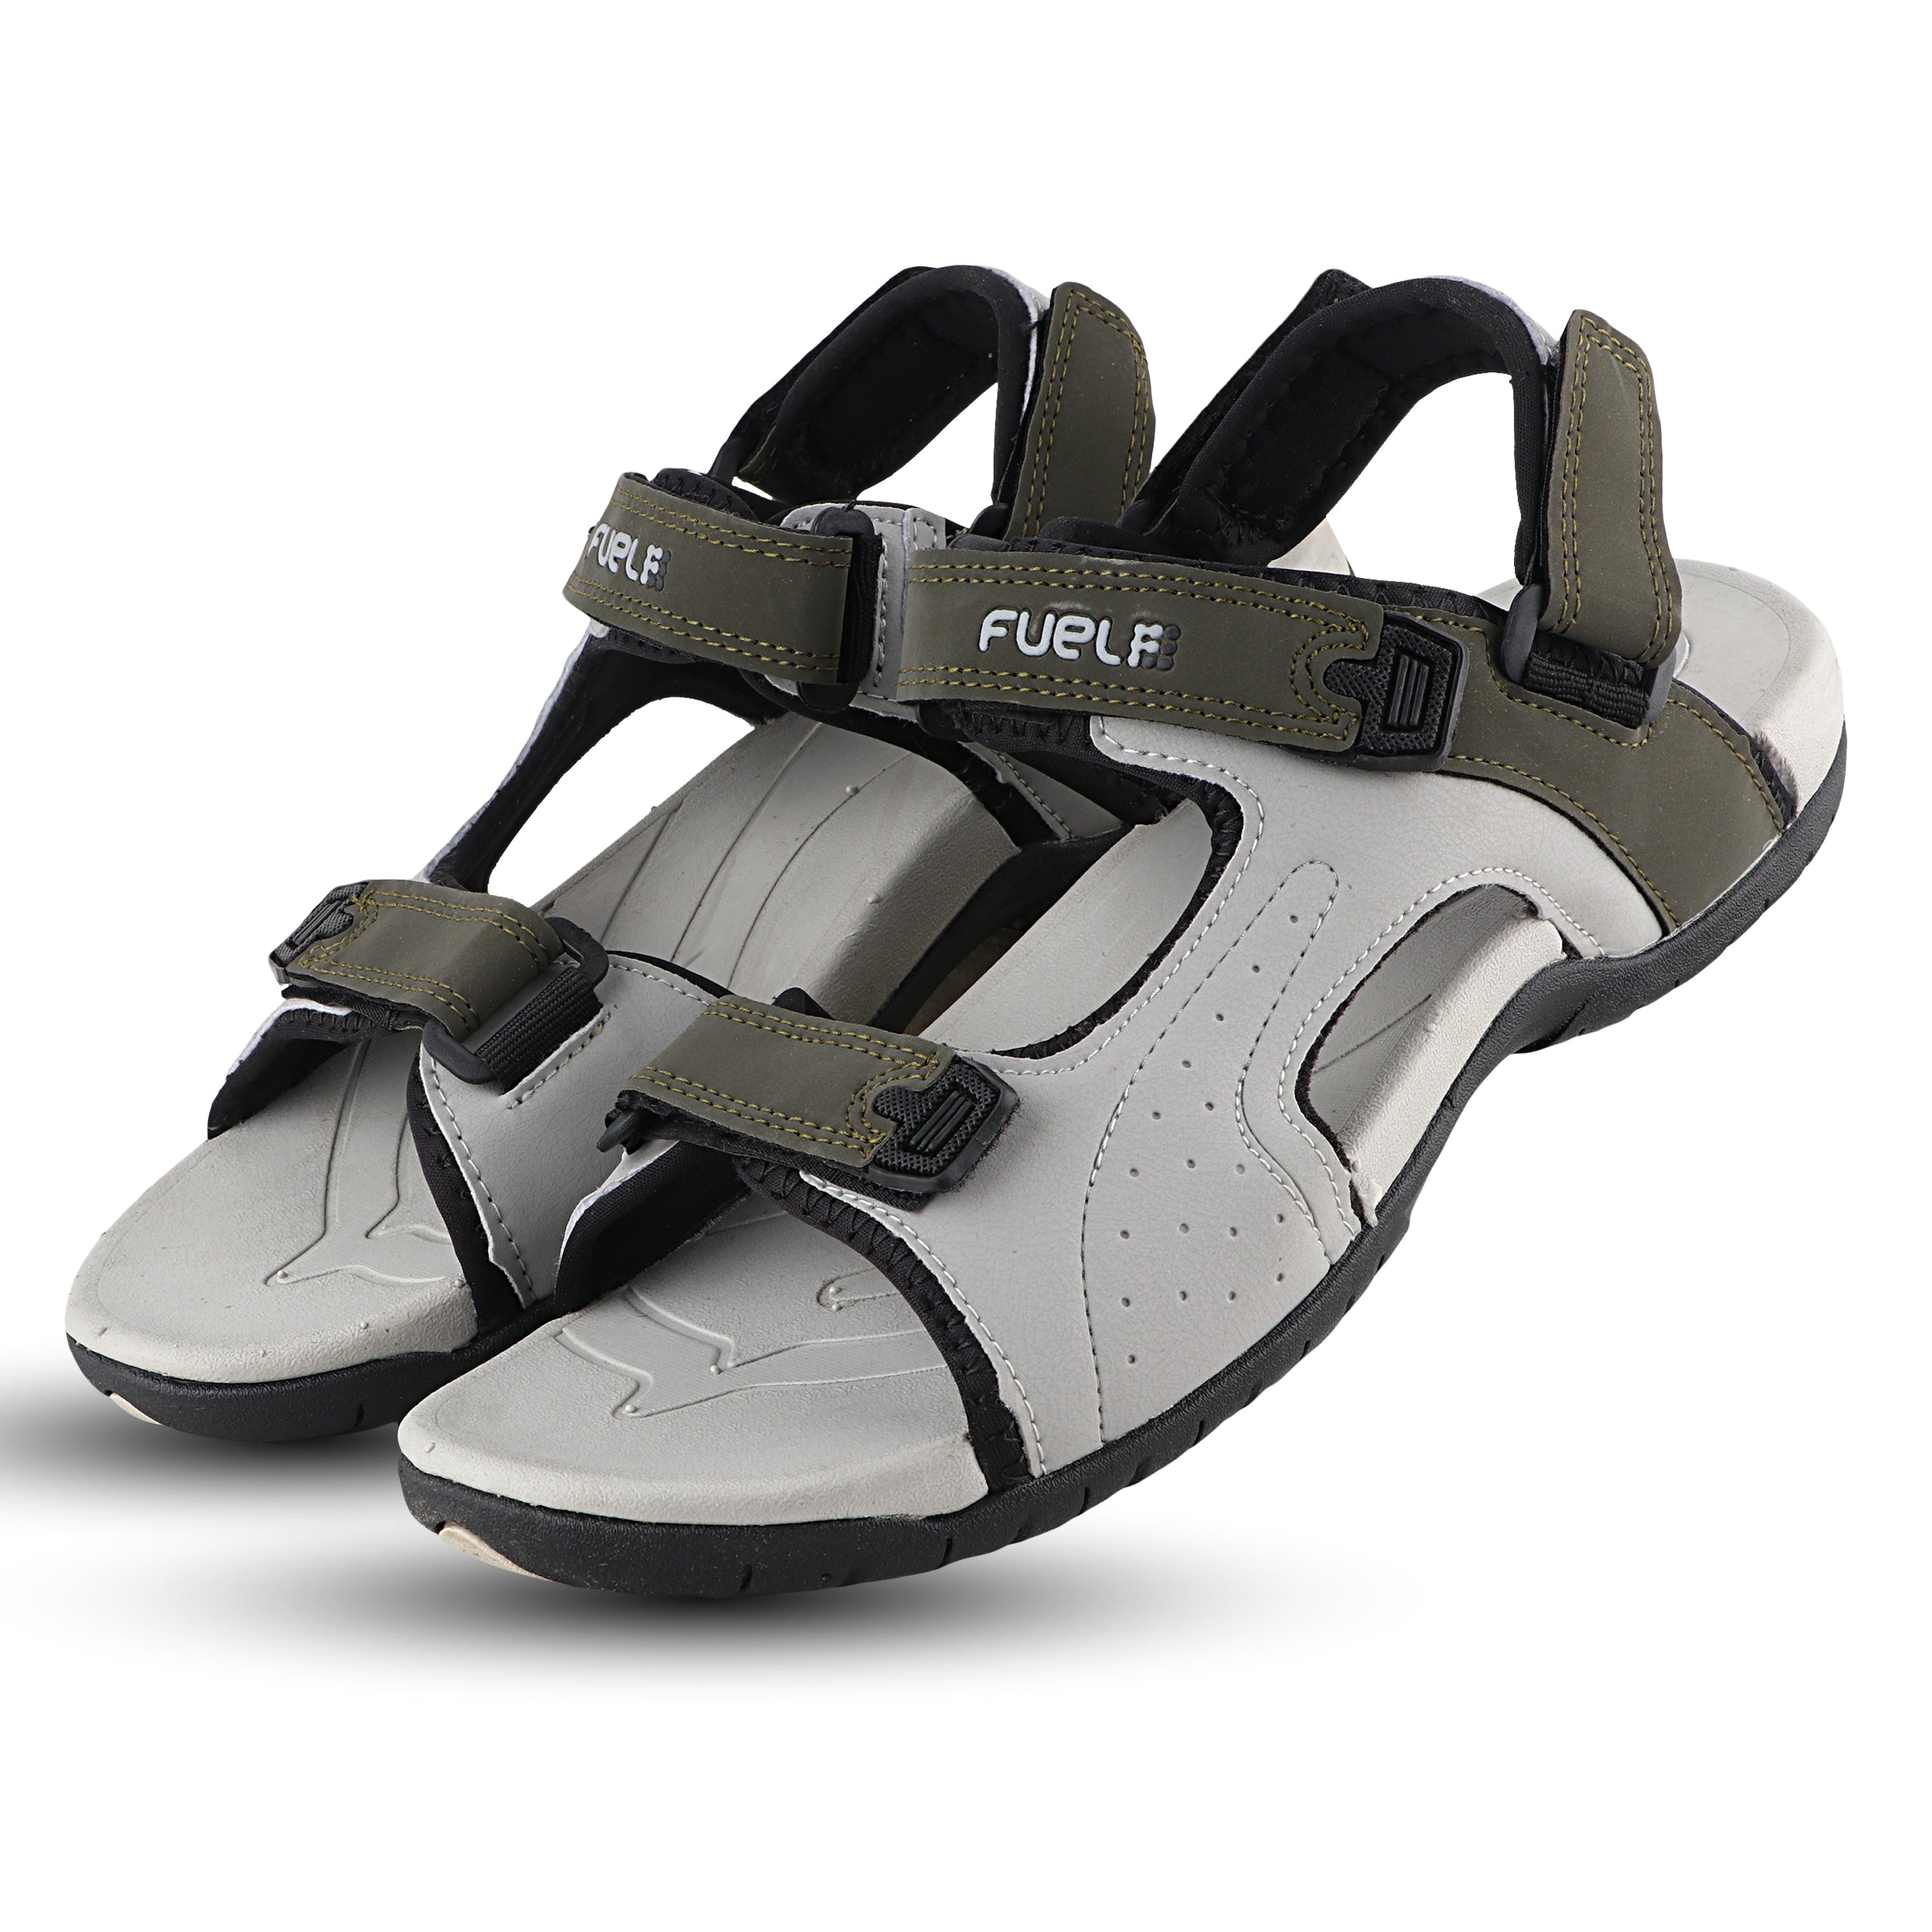 Fuel 2112-02 Sandals For Men's (Olive-Grey)